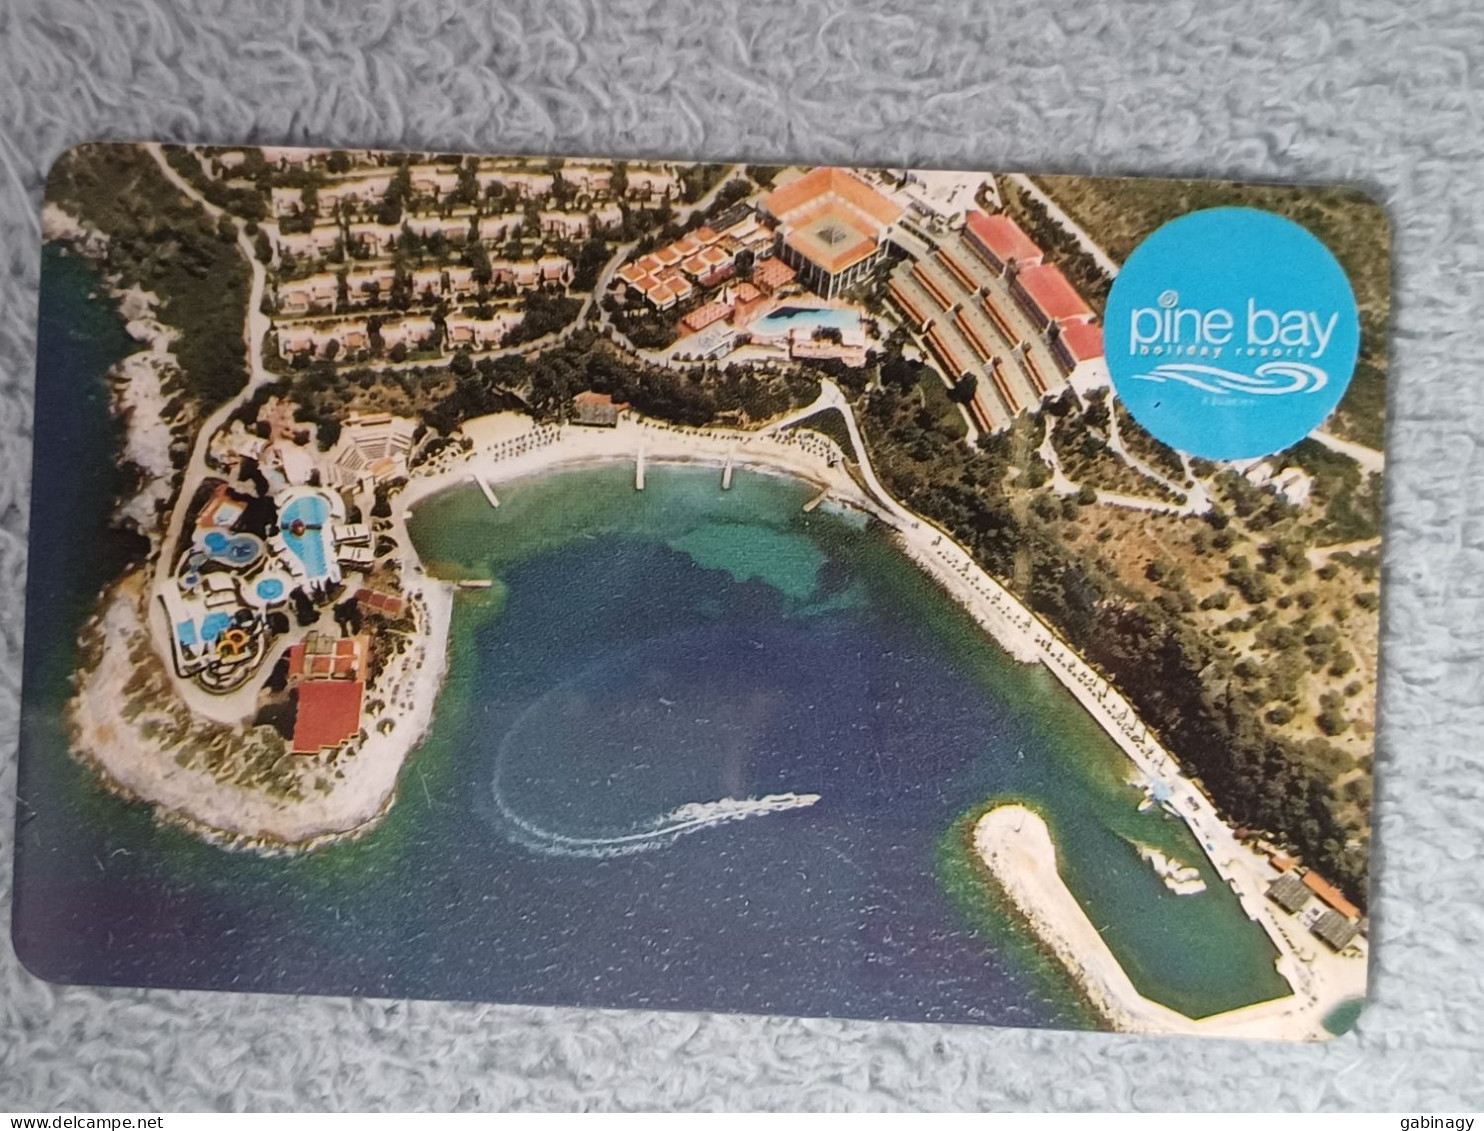 HOTEL KEYS - 2557 - TURKEY - PINE BAY - Hotel Keycards